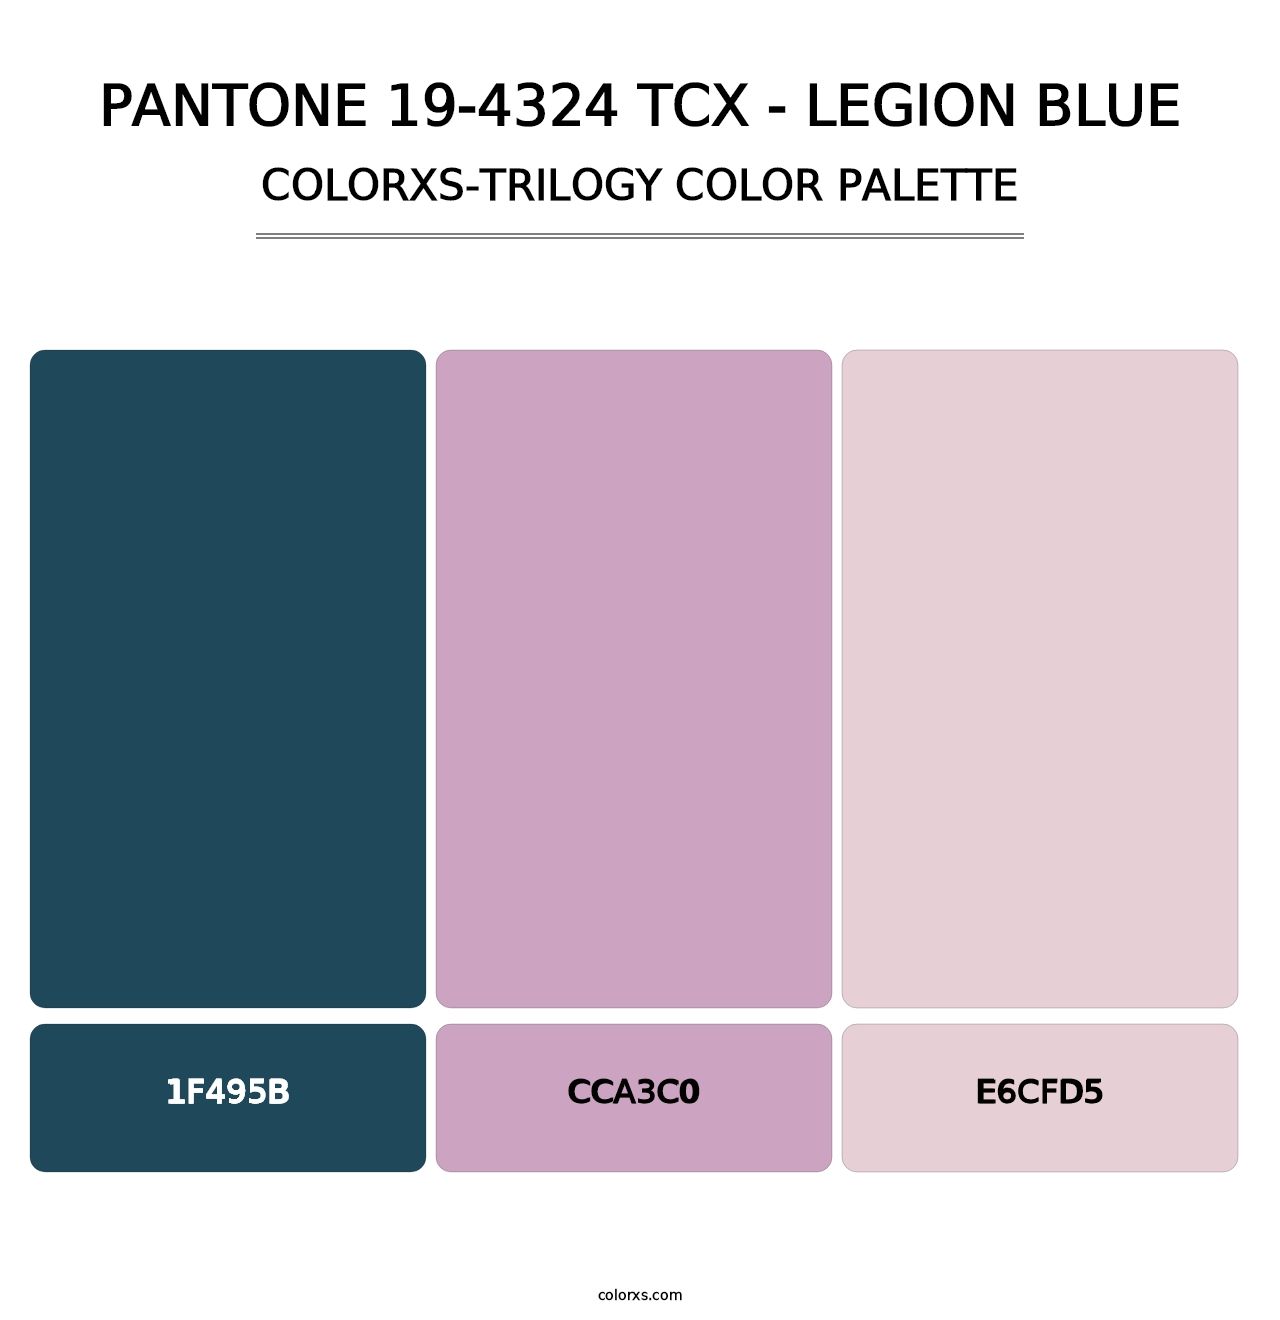 PANTONE 19-4324 TCX - Legion Blue - Colorxs Trilogy Palette